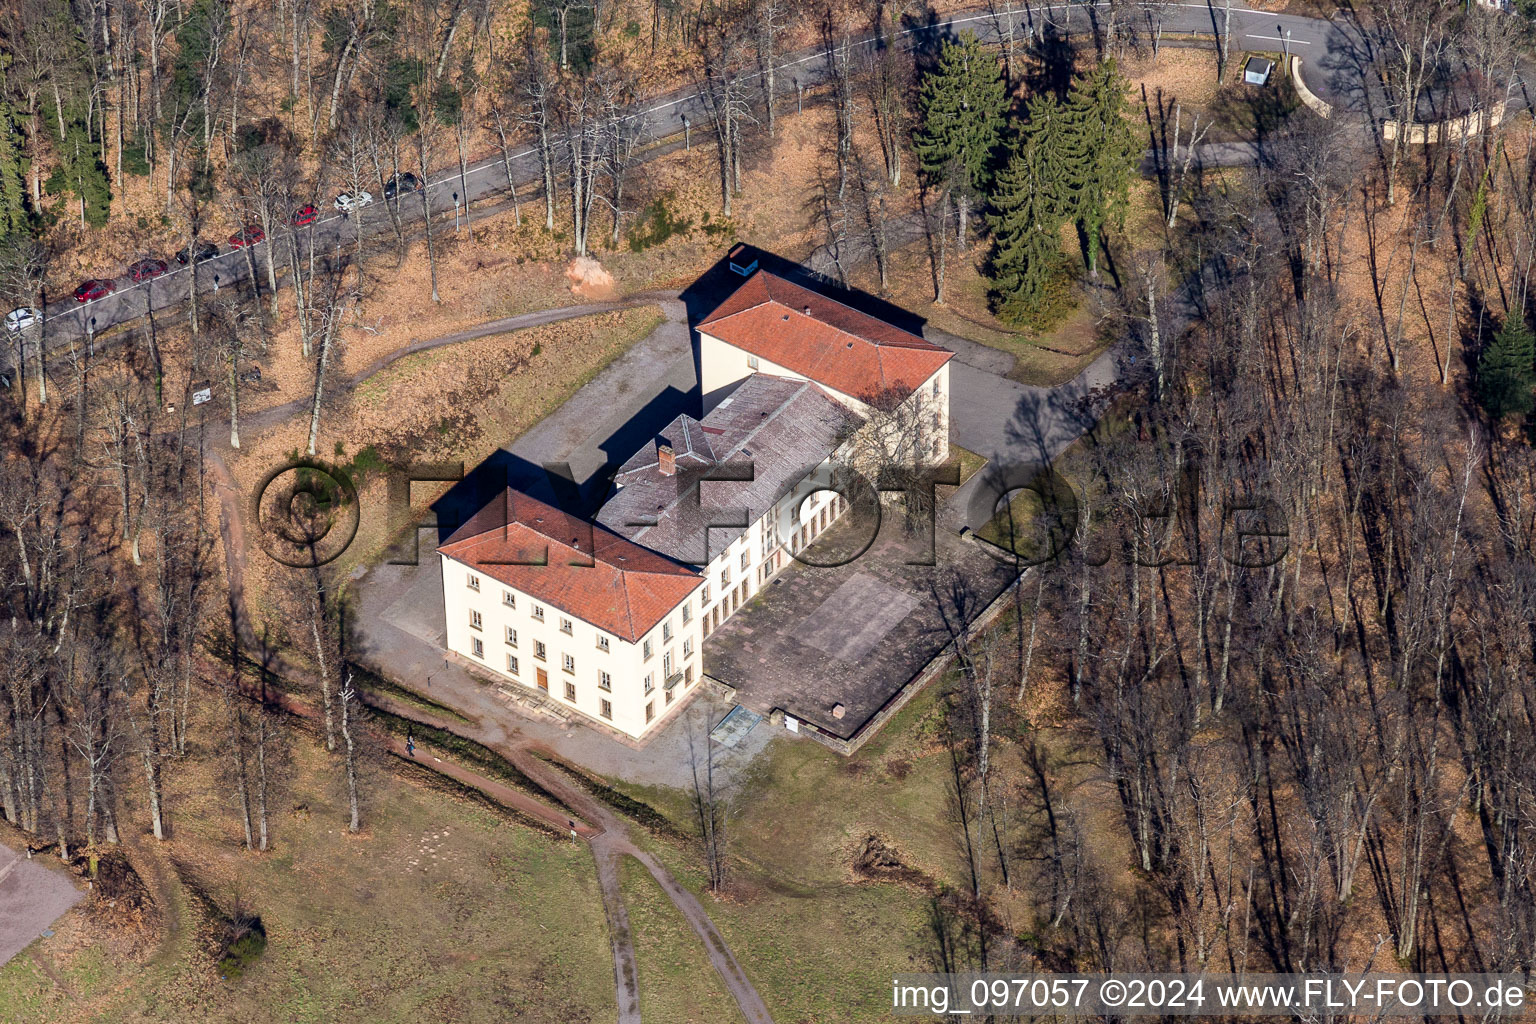 Luftbild von Palais des Schloss Villa Ludwigshöhe in Edenkoben im Bundesland Rheinland-Pfalz, Deutschland